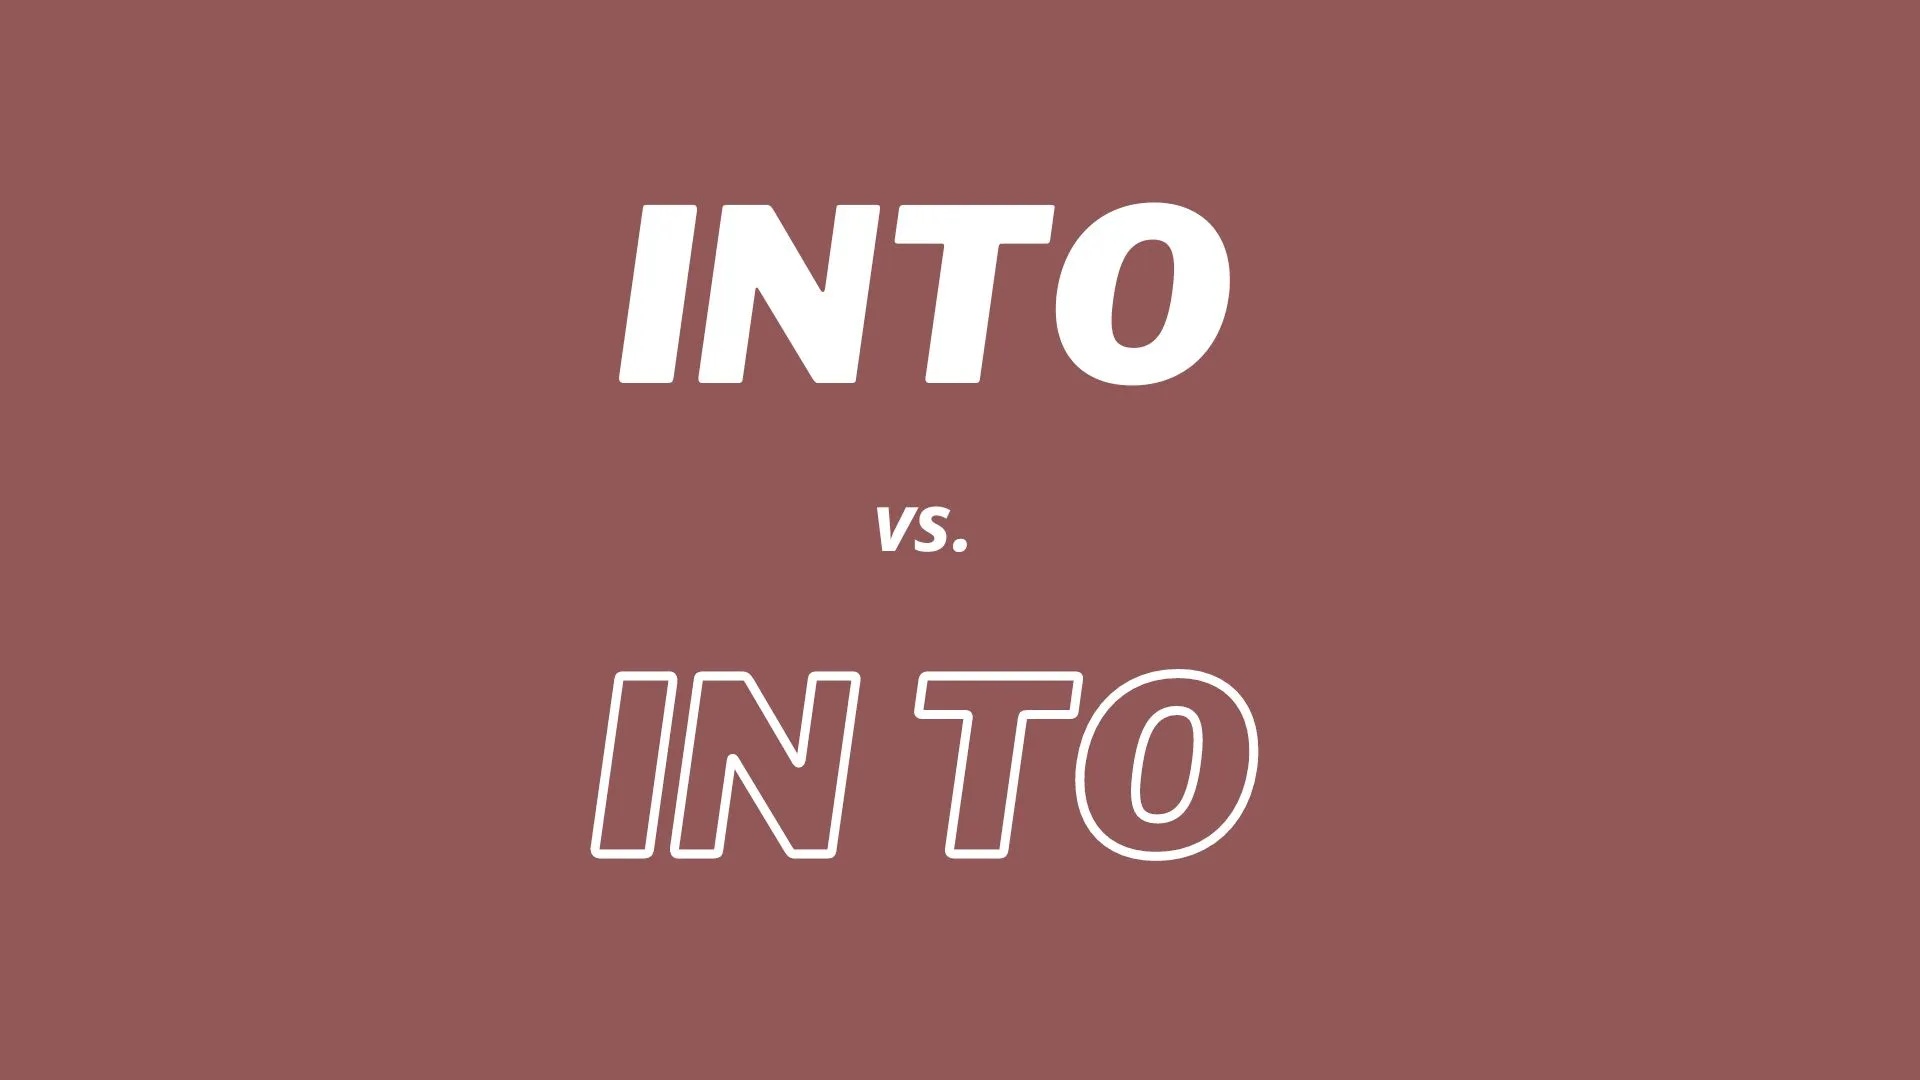 Wizualne porównanie i definicje terminów słownikowych "into" i "in to".